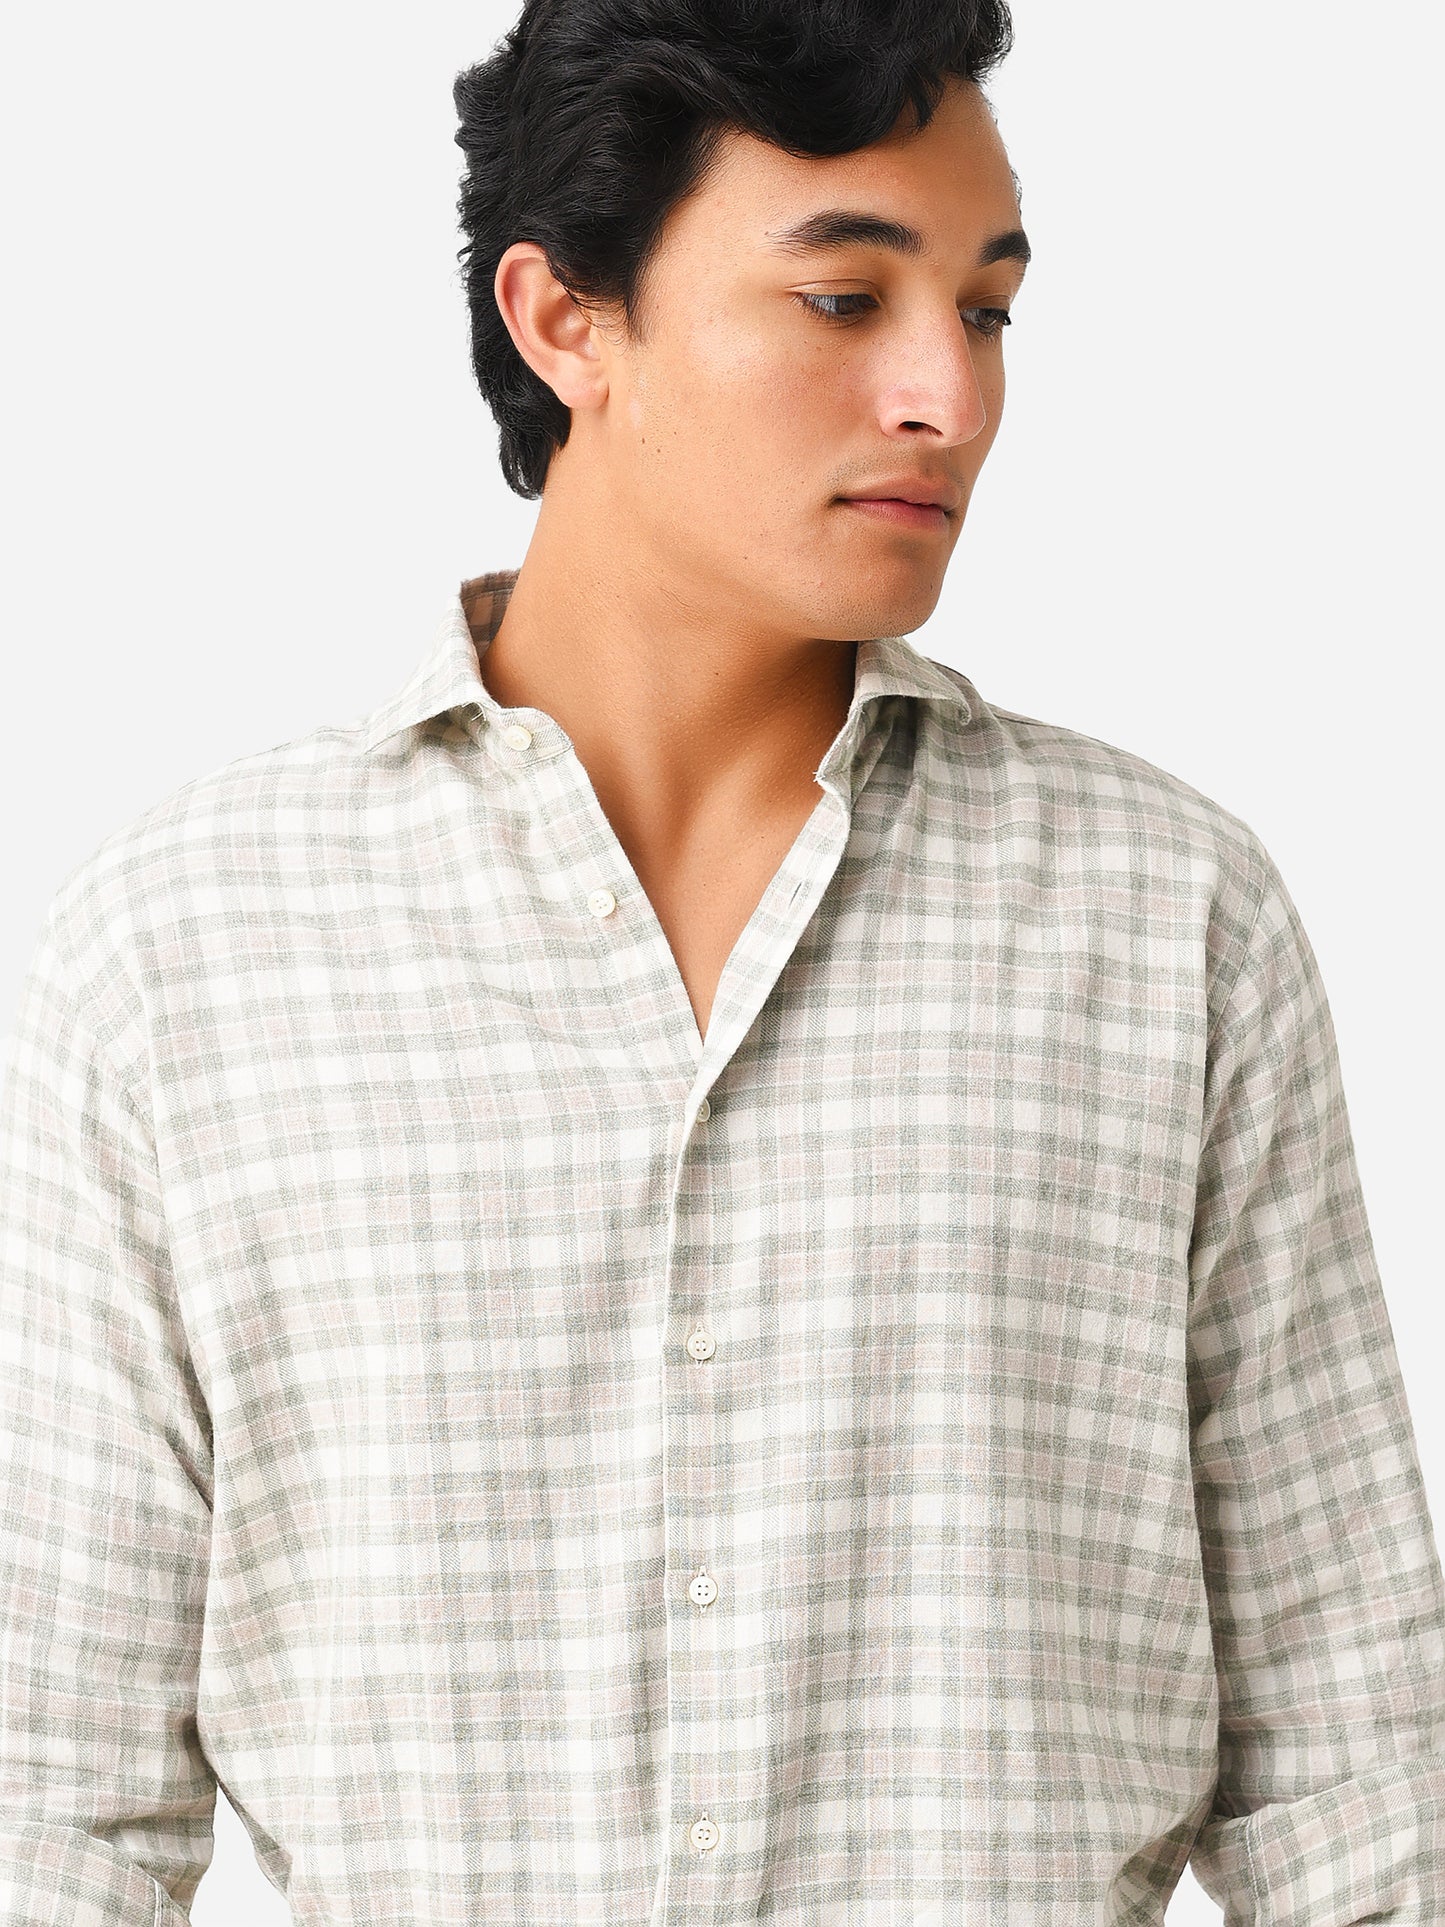 Miller Westby Men's Ulrich Button-Down Shirt